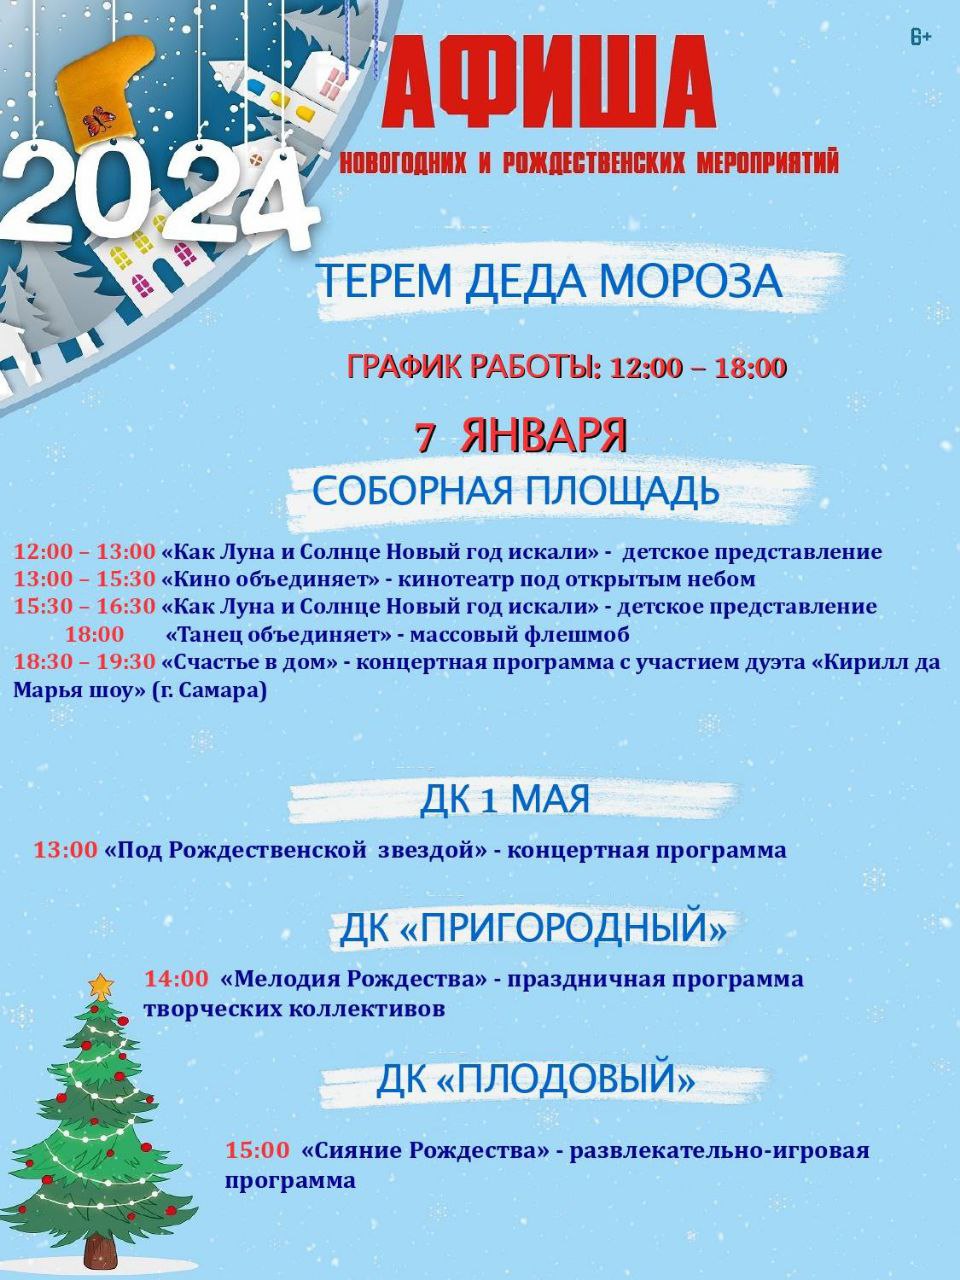 Танцы и представления: афиша рождественских мероприятий в Ульяновске